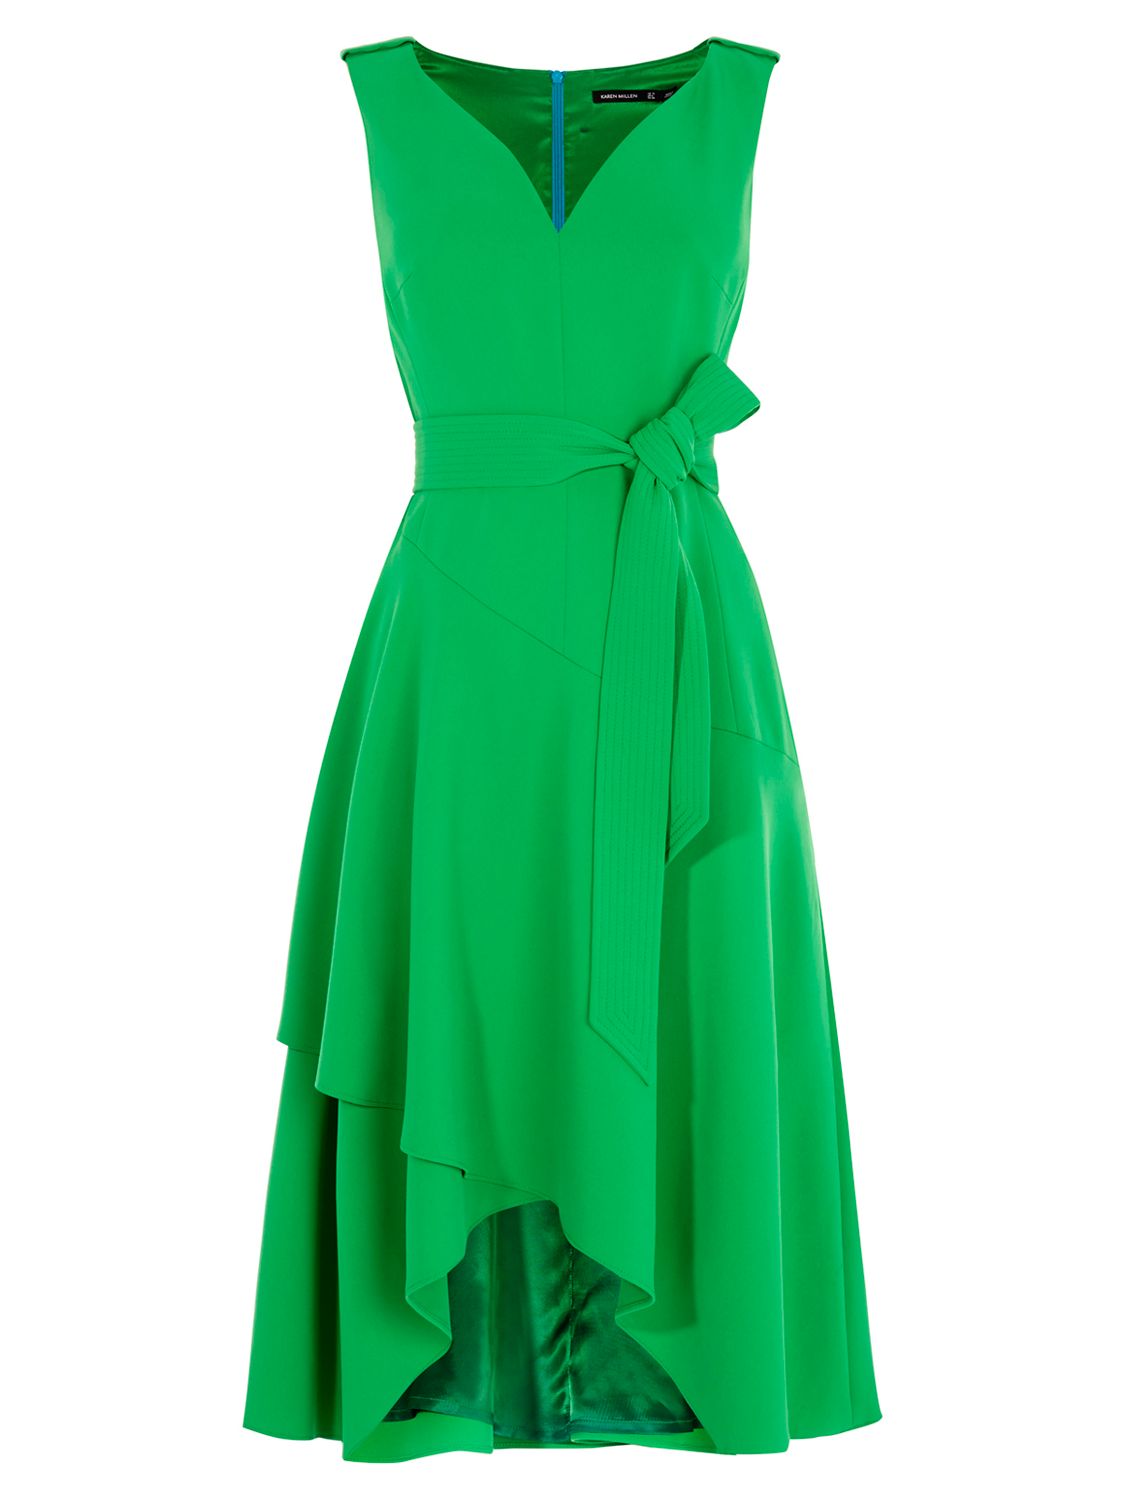 Karen Millen Fluid Day Dress, Green at John Lewis & Partners